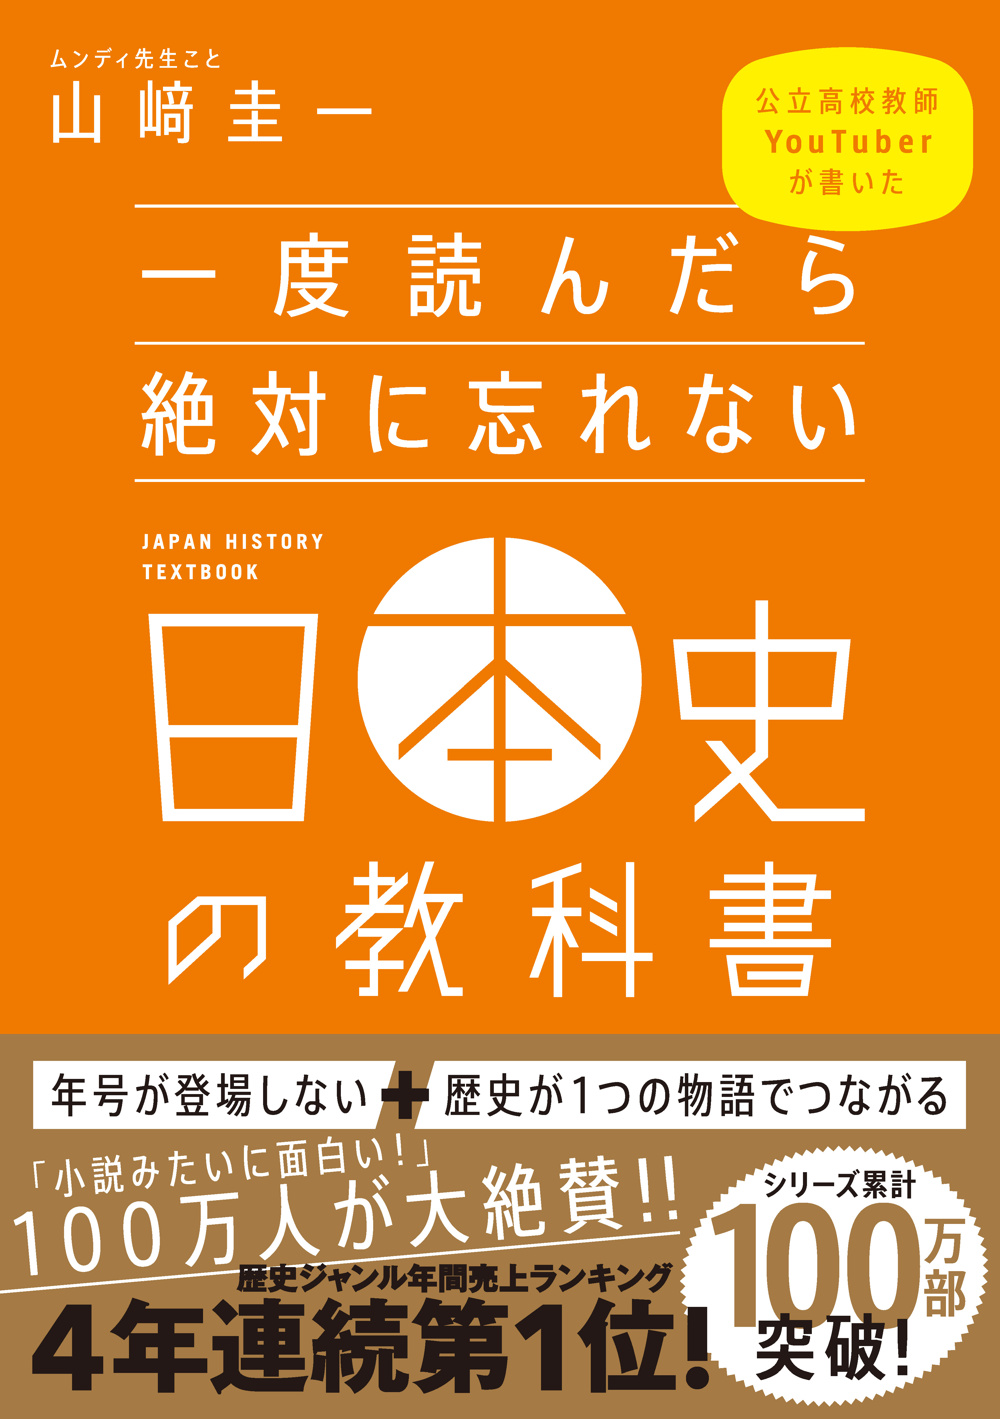 一度読んだら絶対に忘れない日本史の教科書 | SBクリエイティブ